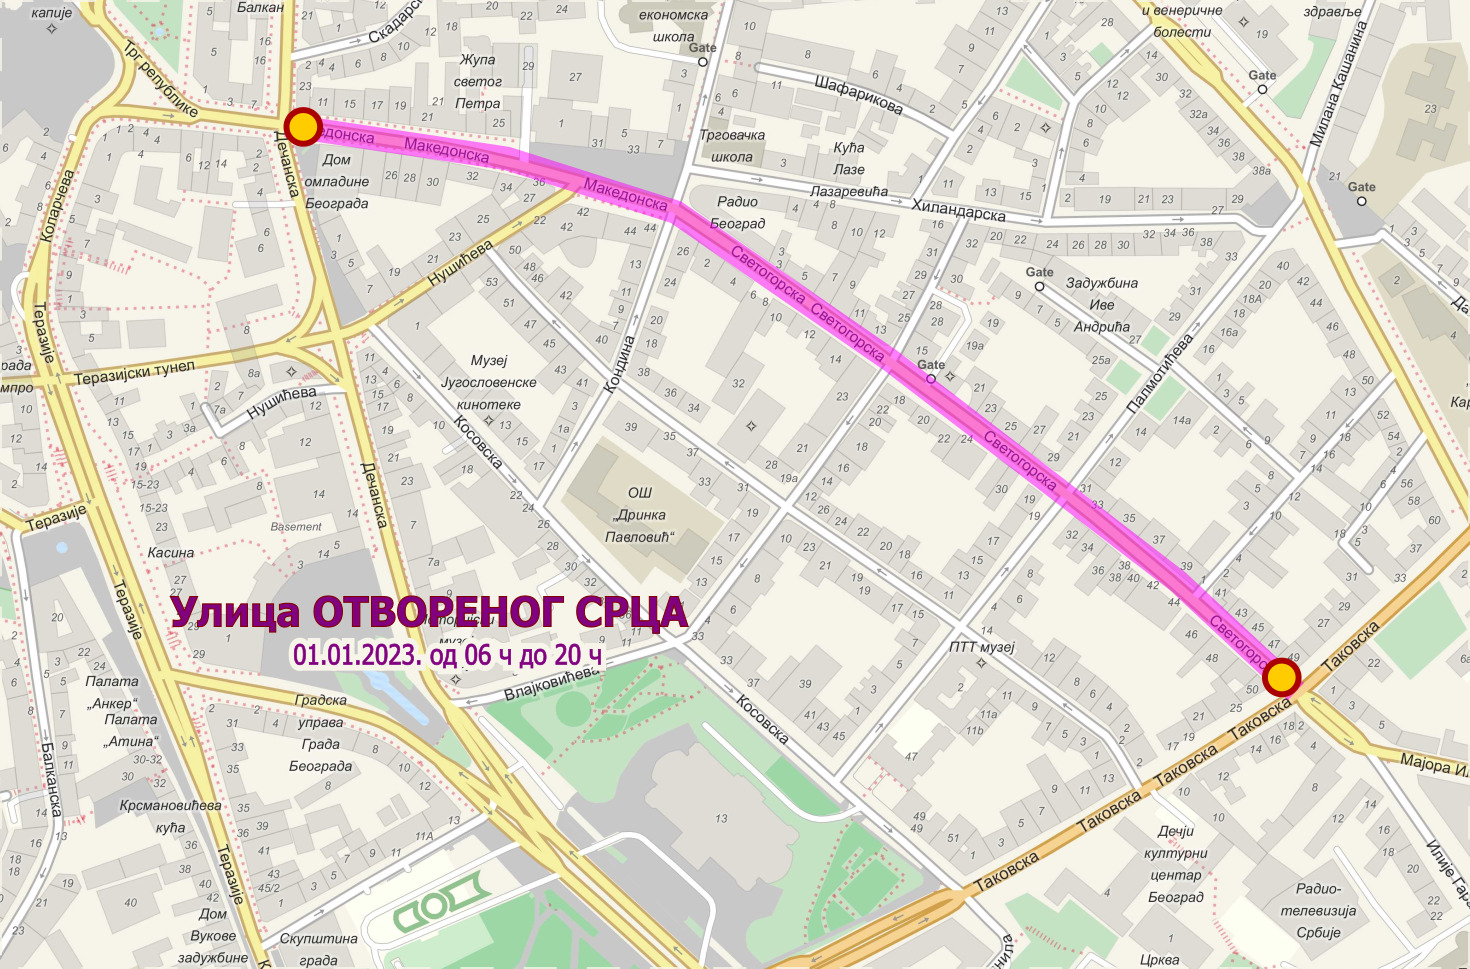 Manifestacija „Ulica otvorenog srca” i ovog 1. januara u Beogradu 2